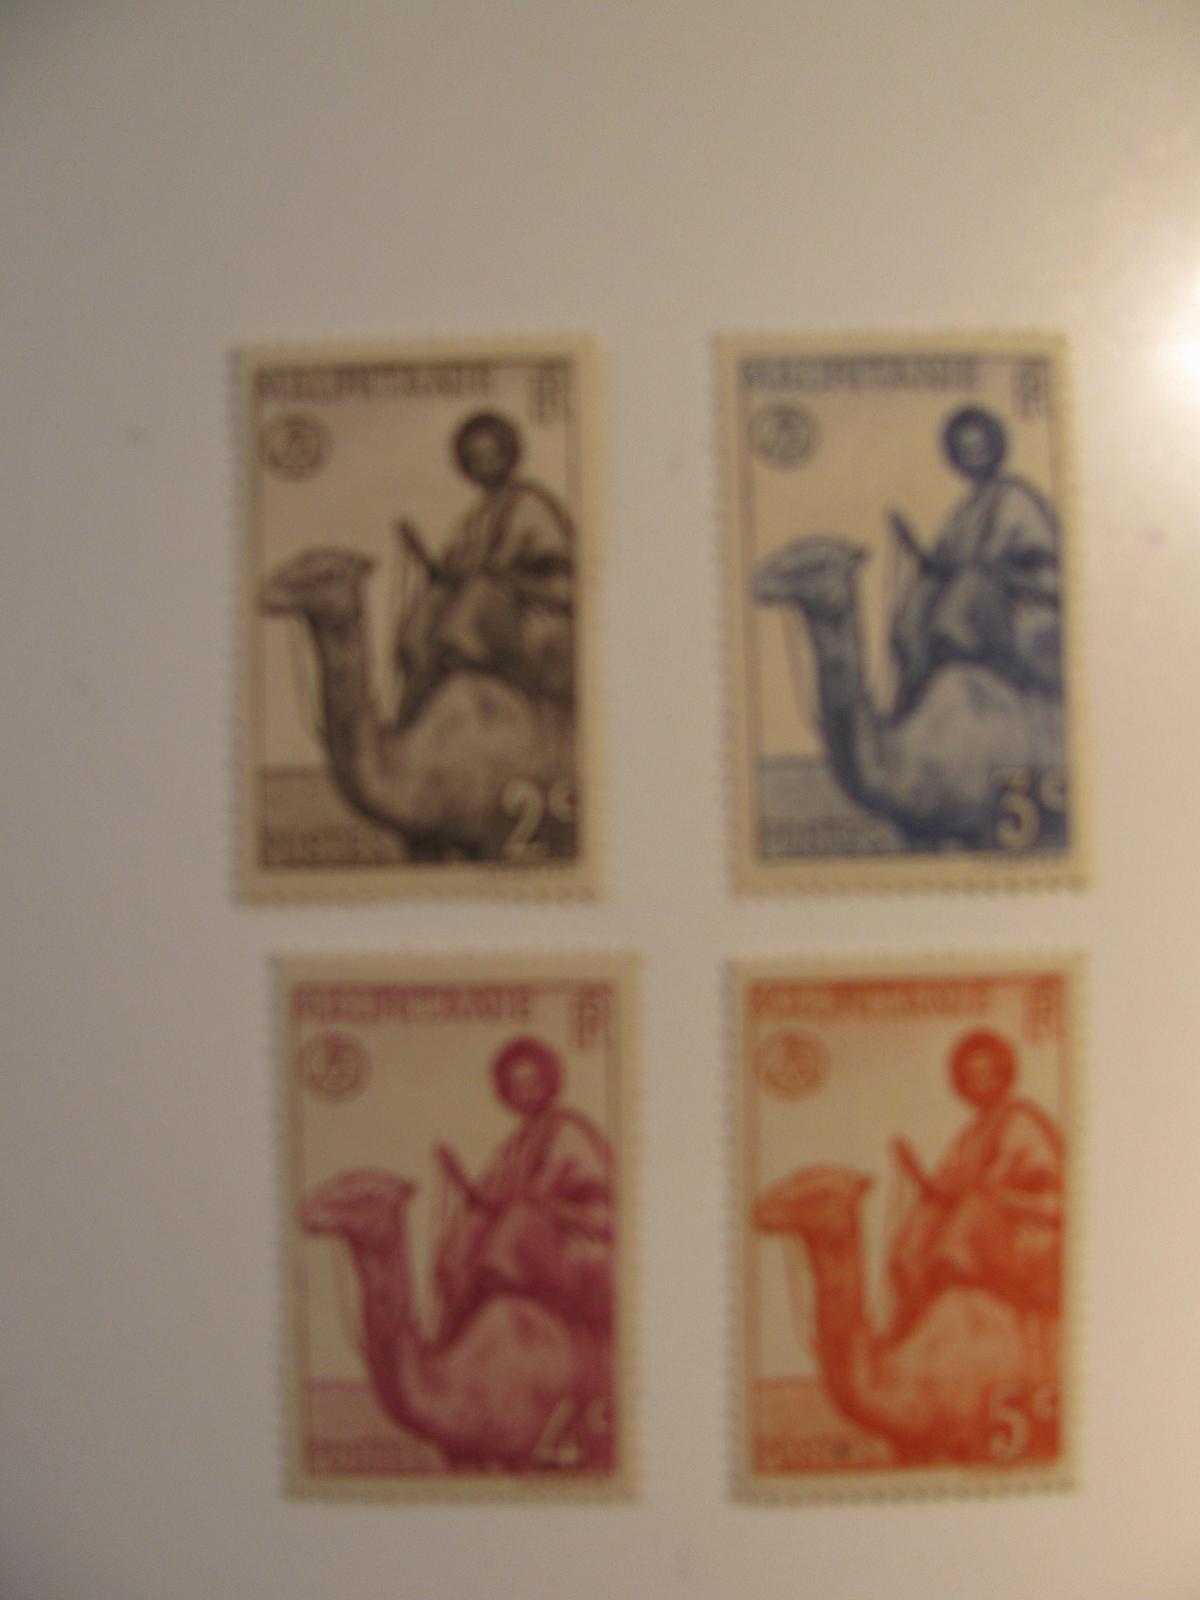 4 Mauritania Unused  Stamp(s)